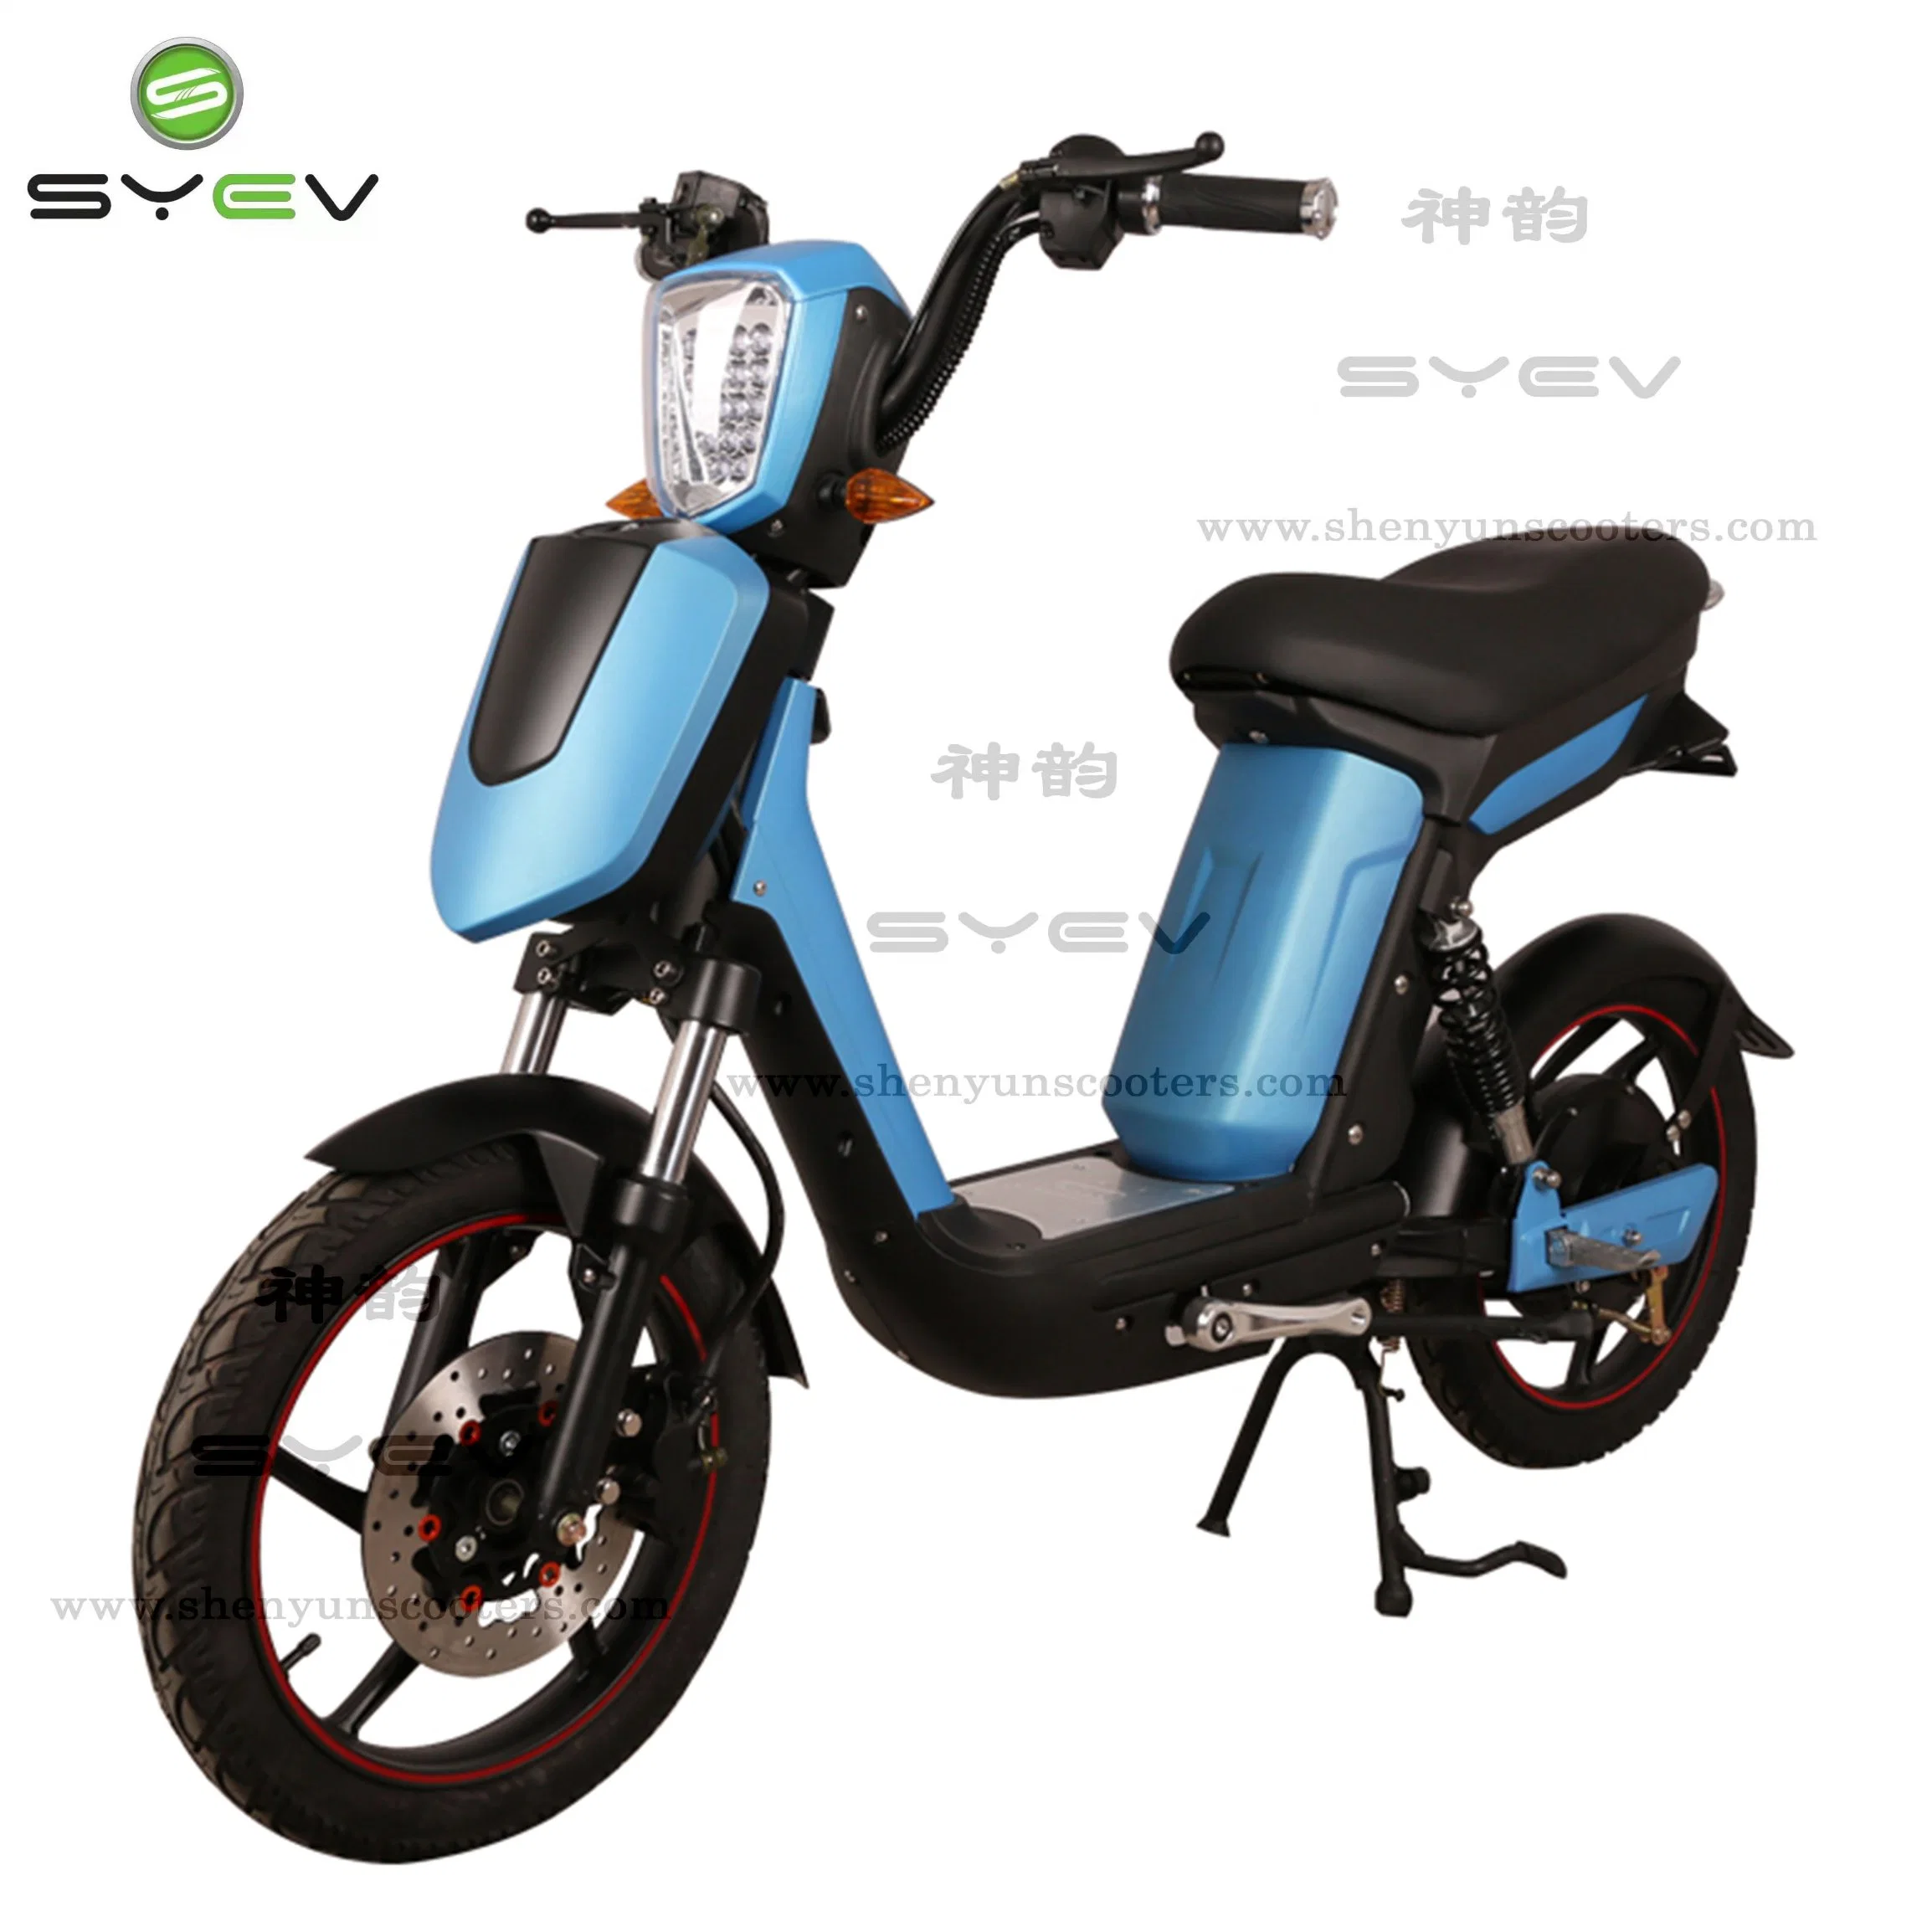 Syev дешевые цены хорошего качества 500W/800 Вт мотор BLDC китайский электрический мотоцикл скутер велосипед с диска /барабанными тормозами